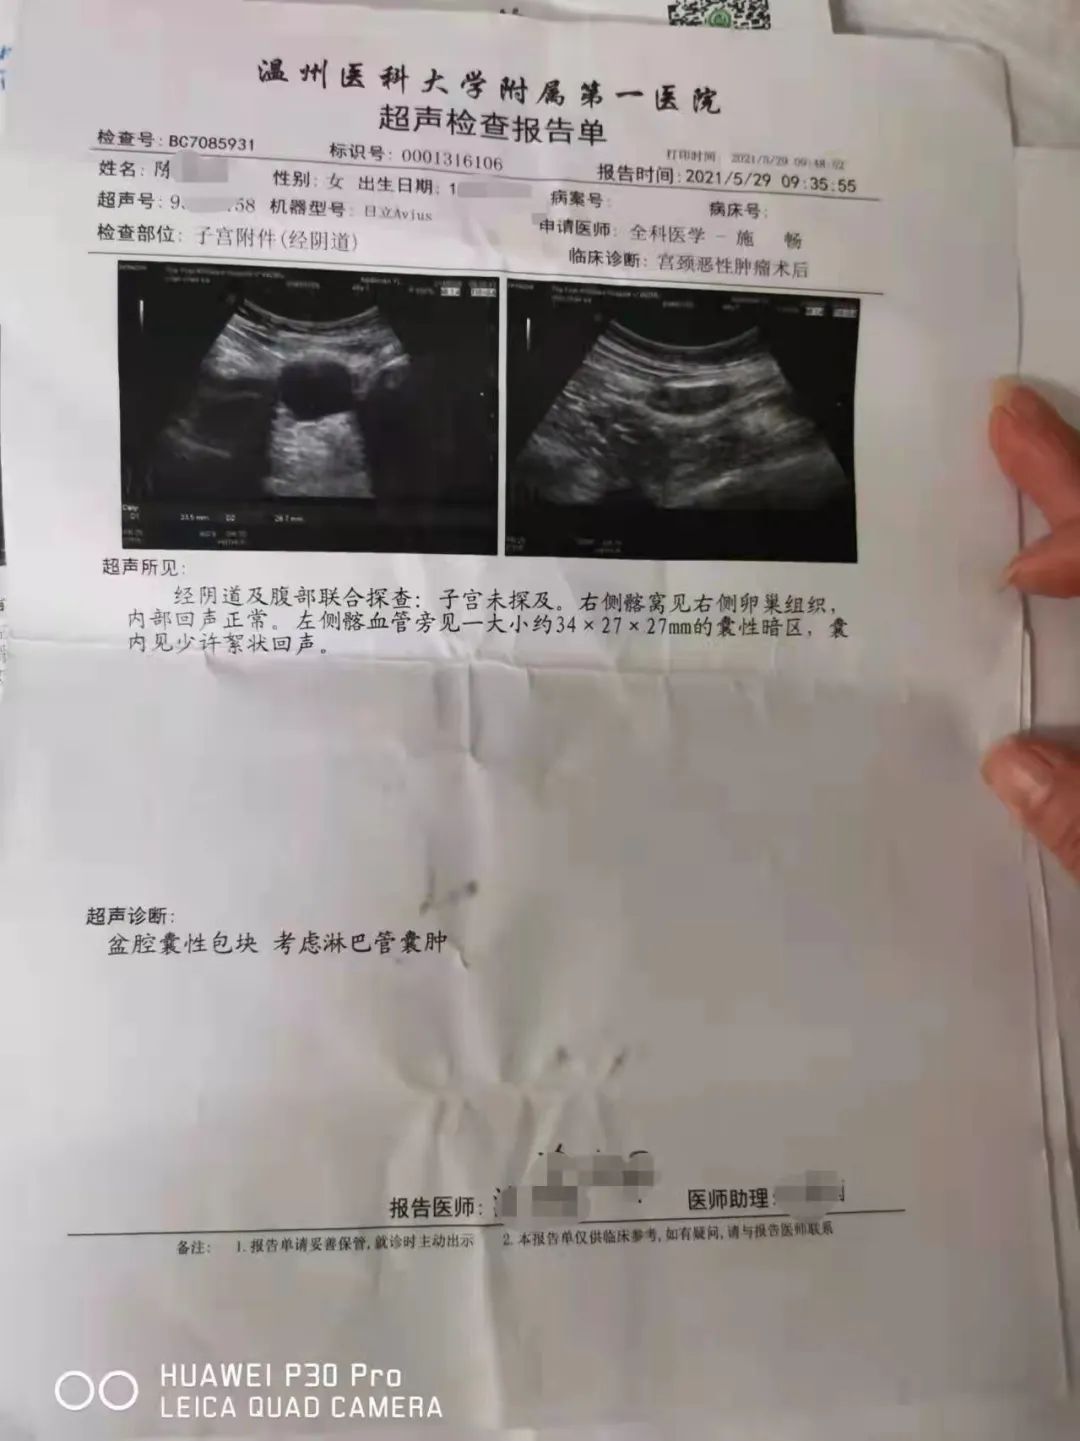 已切除了子宫,体检报告却显示子宫正常,迪安美生这是啥操作?